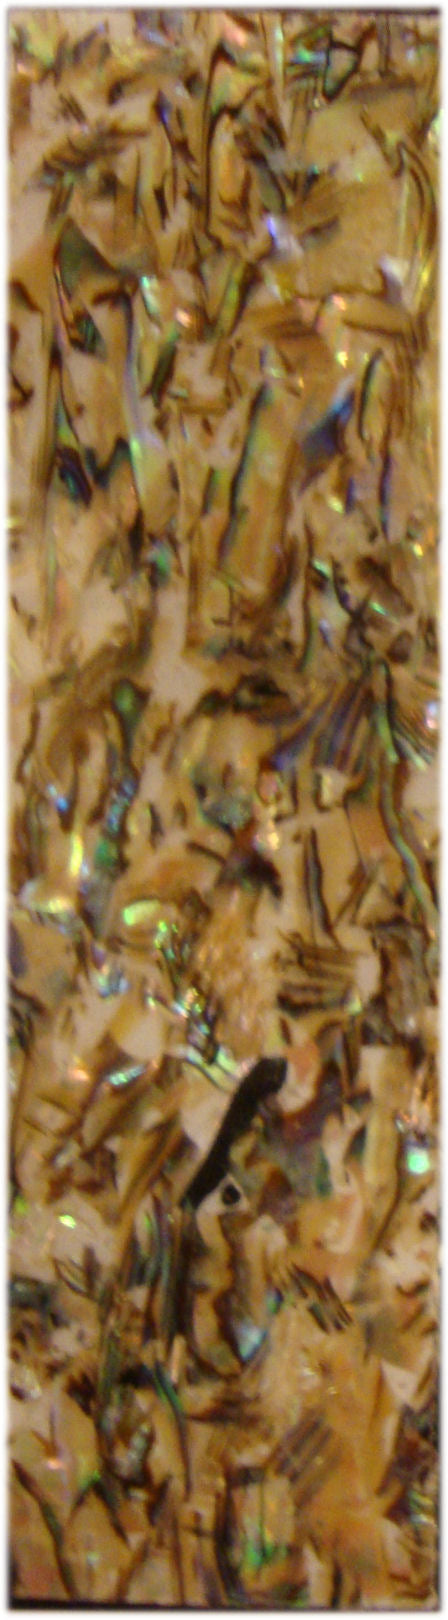 Scaglie madreperla adesive marmorizzato